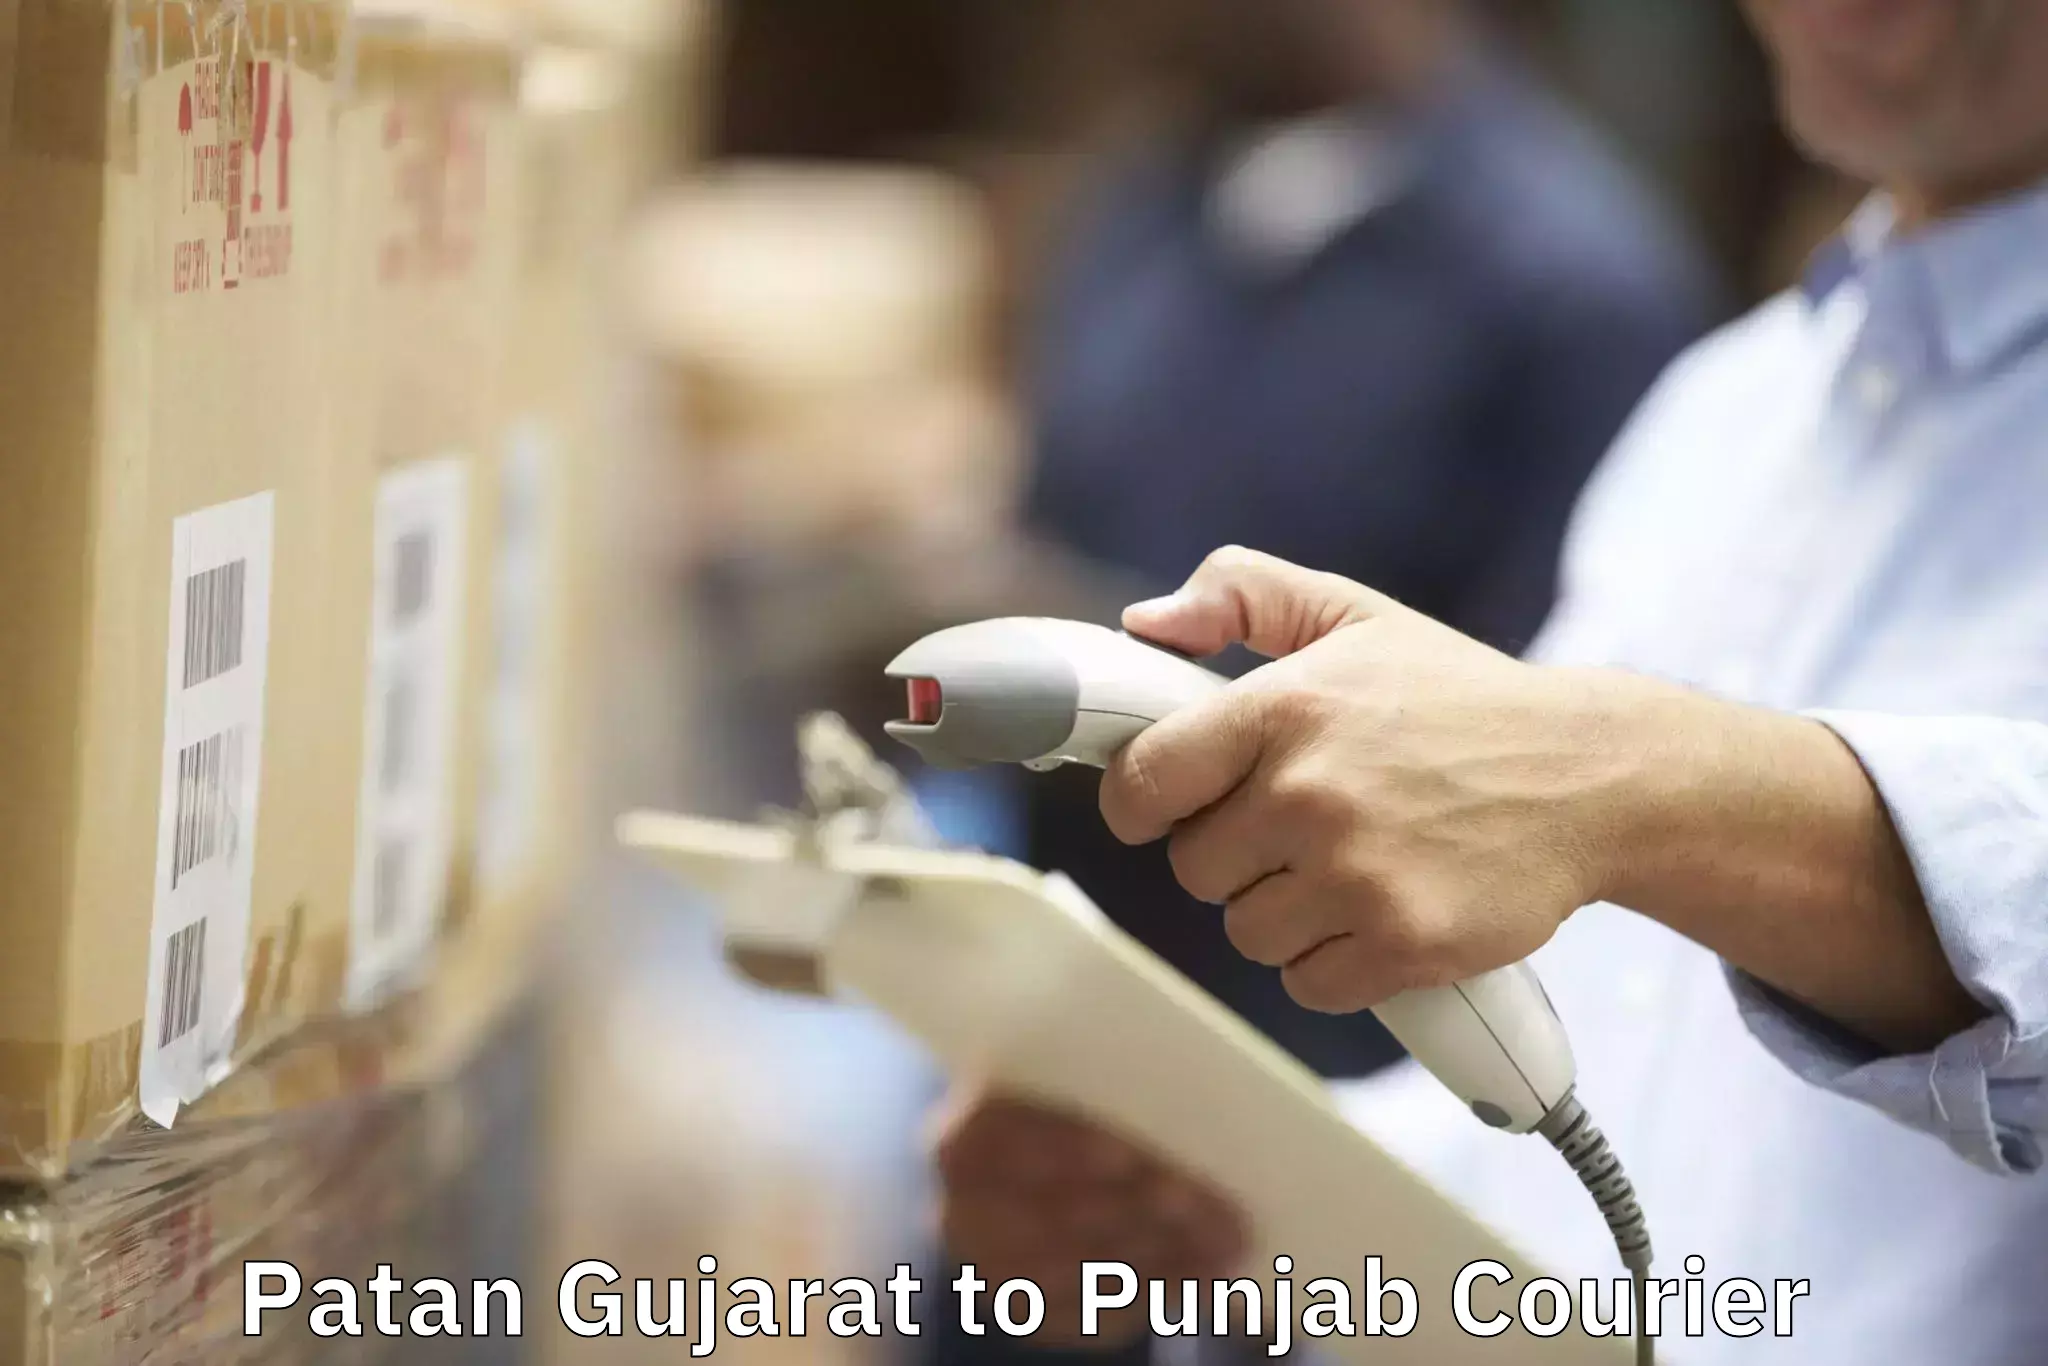 Furniture handling services Patan Gujarat to Punjab